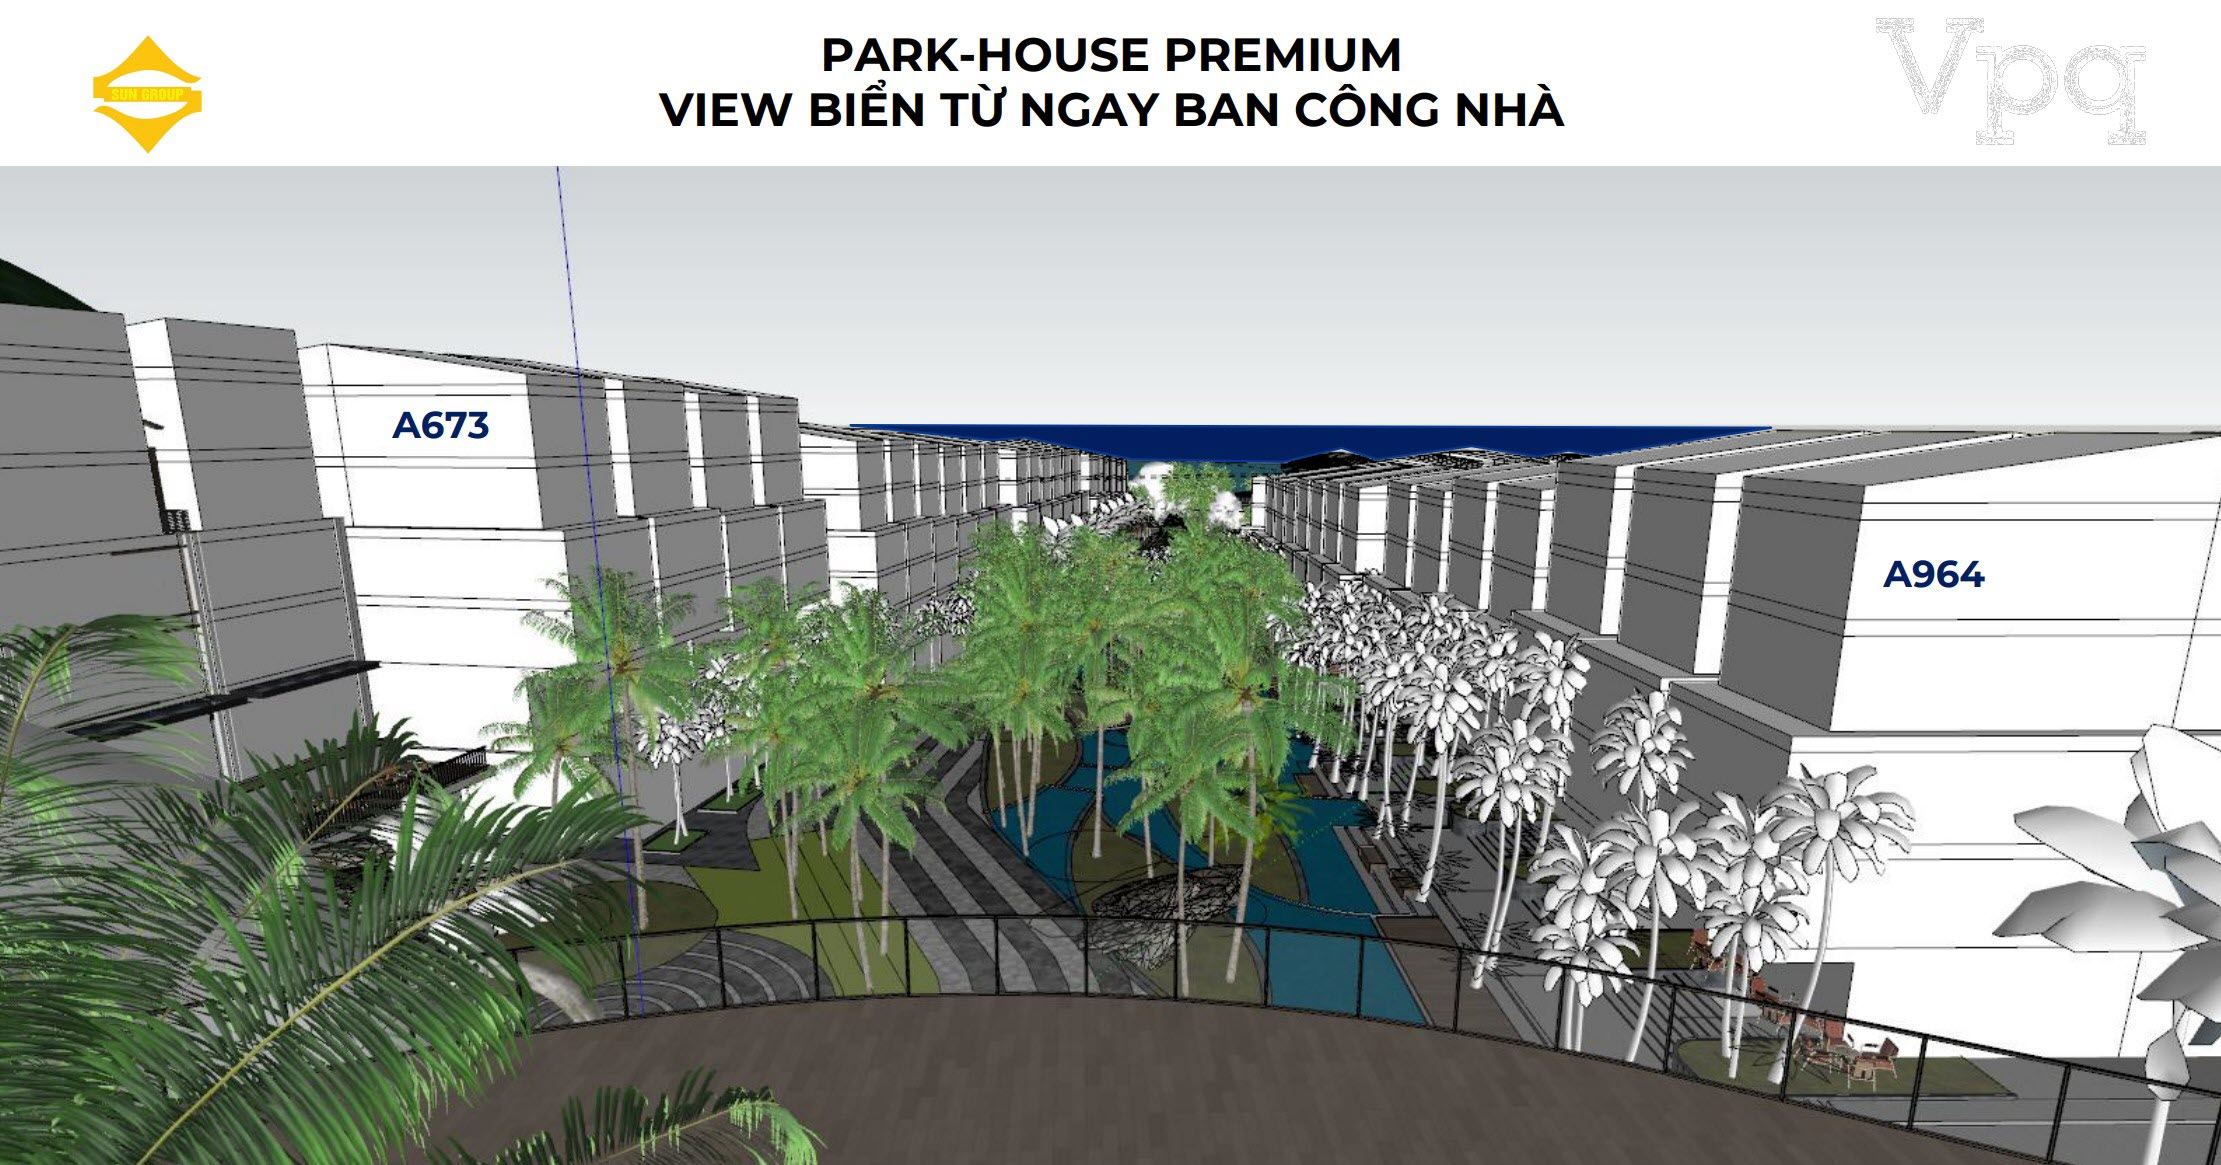 Park House Premium view biển ngay từ cầu kính